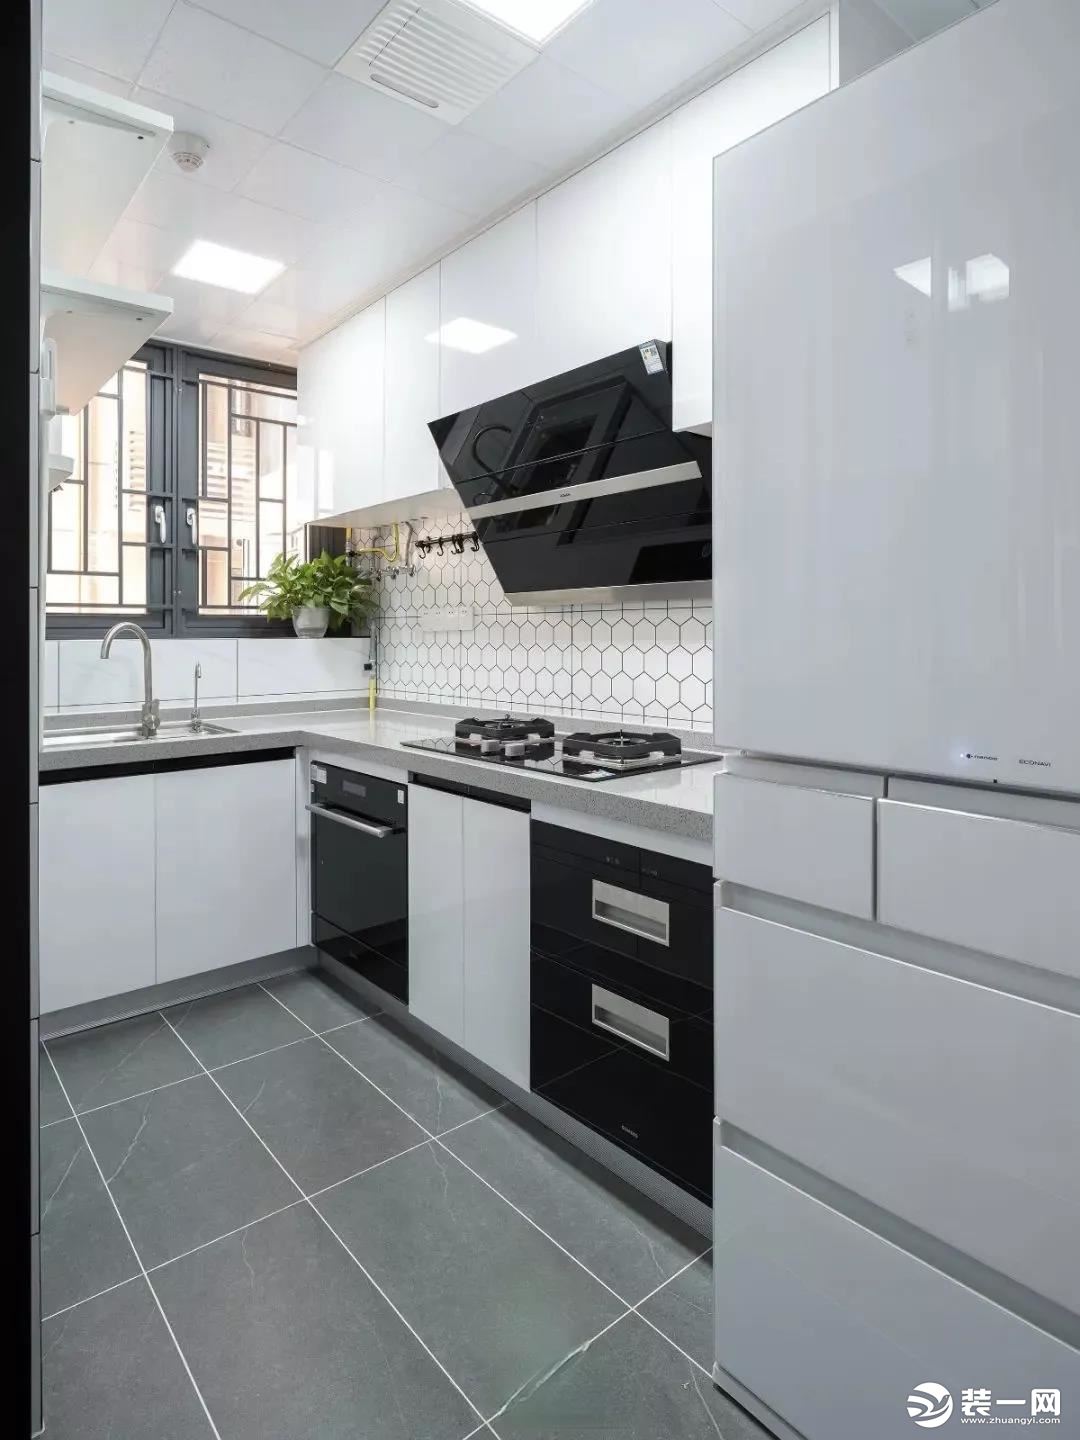 厨房将生活阳台扩进厨房，厨房面积增大。L型操作台的设计流线清晰简单。